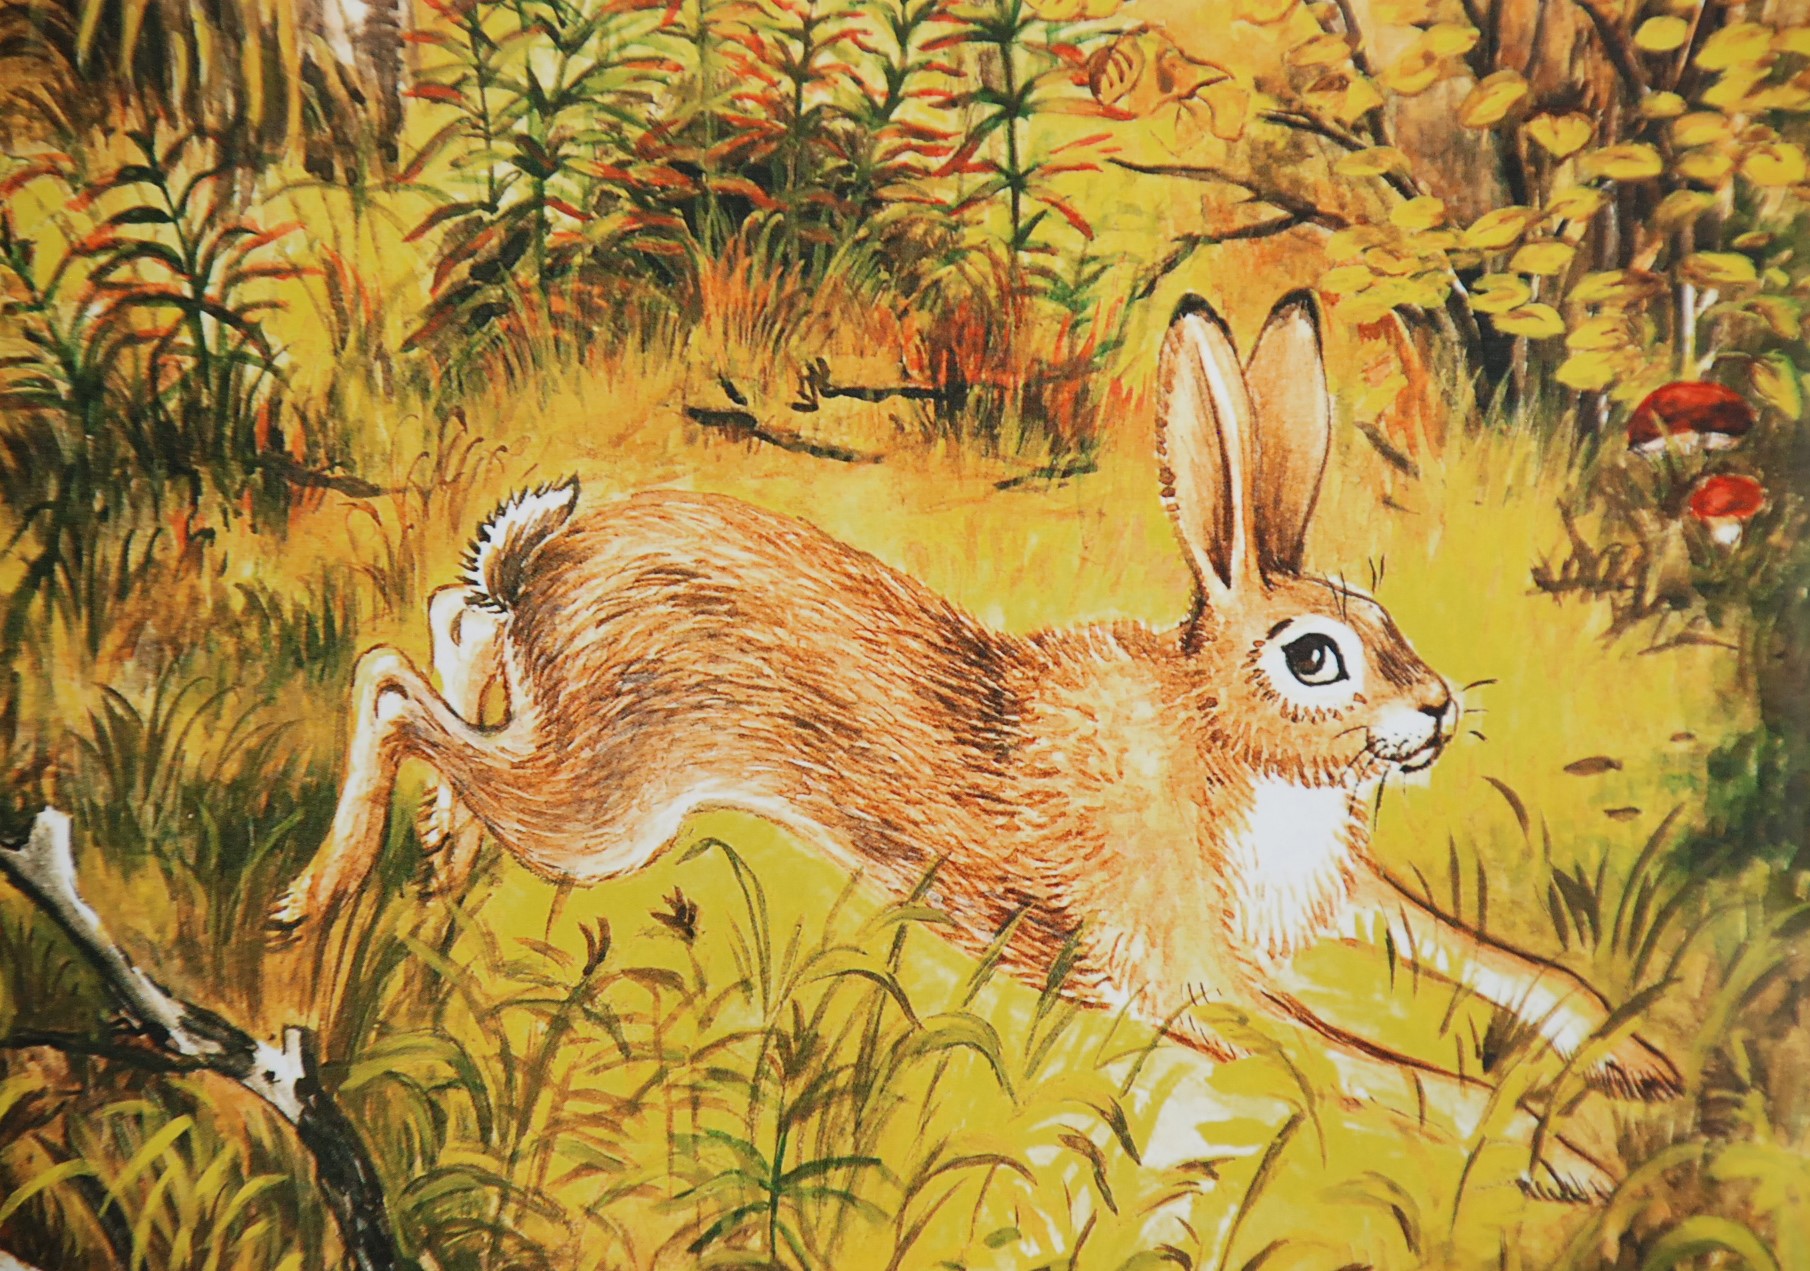 У зайца хвост короткий а уши. Заяц с длинными ушами. Почему у зайца длинные уши и короткий хвост. Отчего у зайца длинные уши. Осенний лес с пробегающим зайцем.